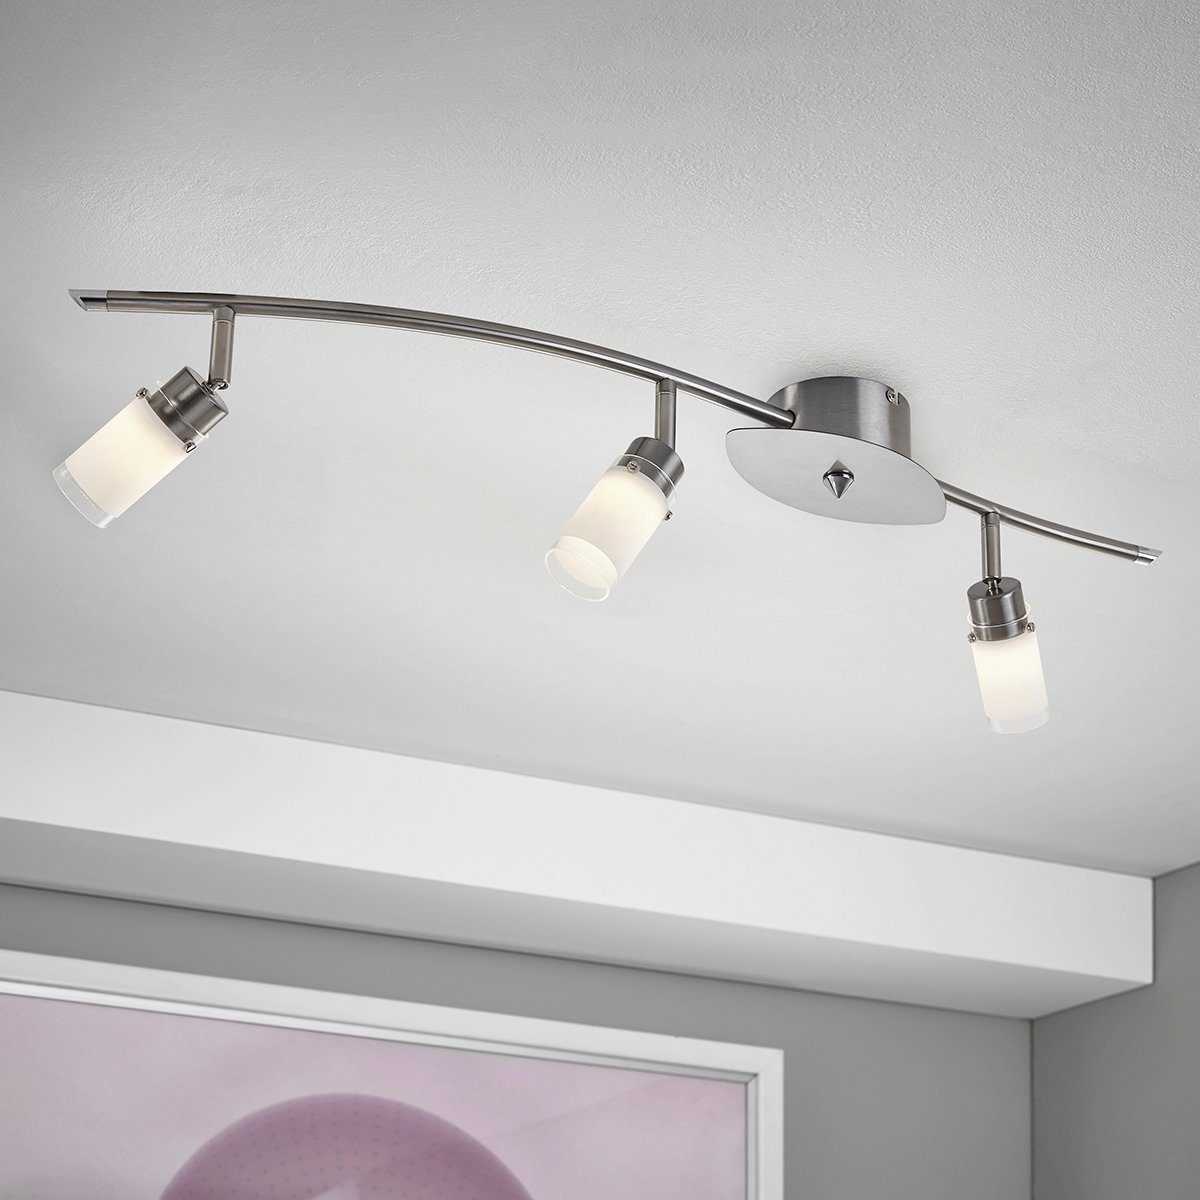 MeLiTec LED Deckenleuchte Wohnzimmer, Lampe Deckenleuchte, Spot, Deckenstrahler, Deckenlampe, D67, warmweiß, Küchen, LED